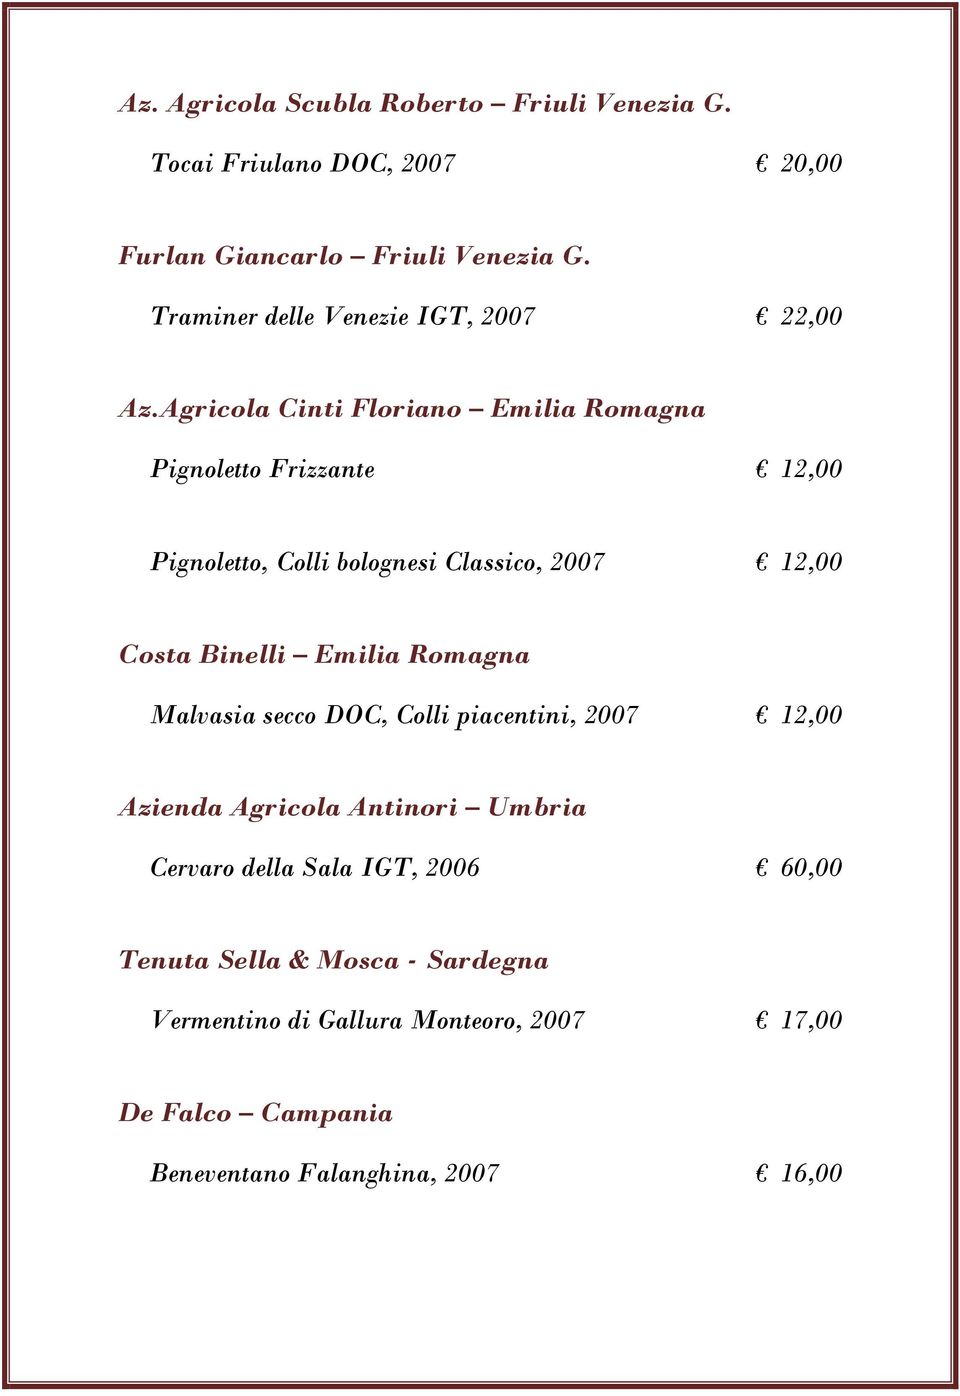 Agricola Cinti Floriano Emilia Romagna Pignoletto Frizzante 12,00 Pignoletto, Colli bolognesi Classico, 2007 12,00 Costa Binelli Emilia